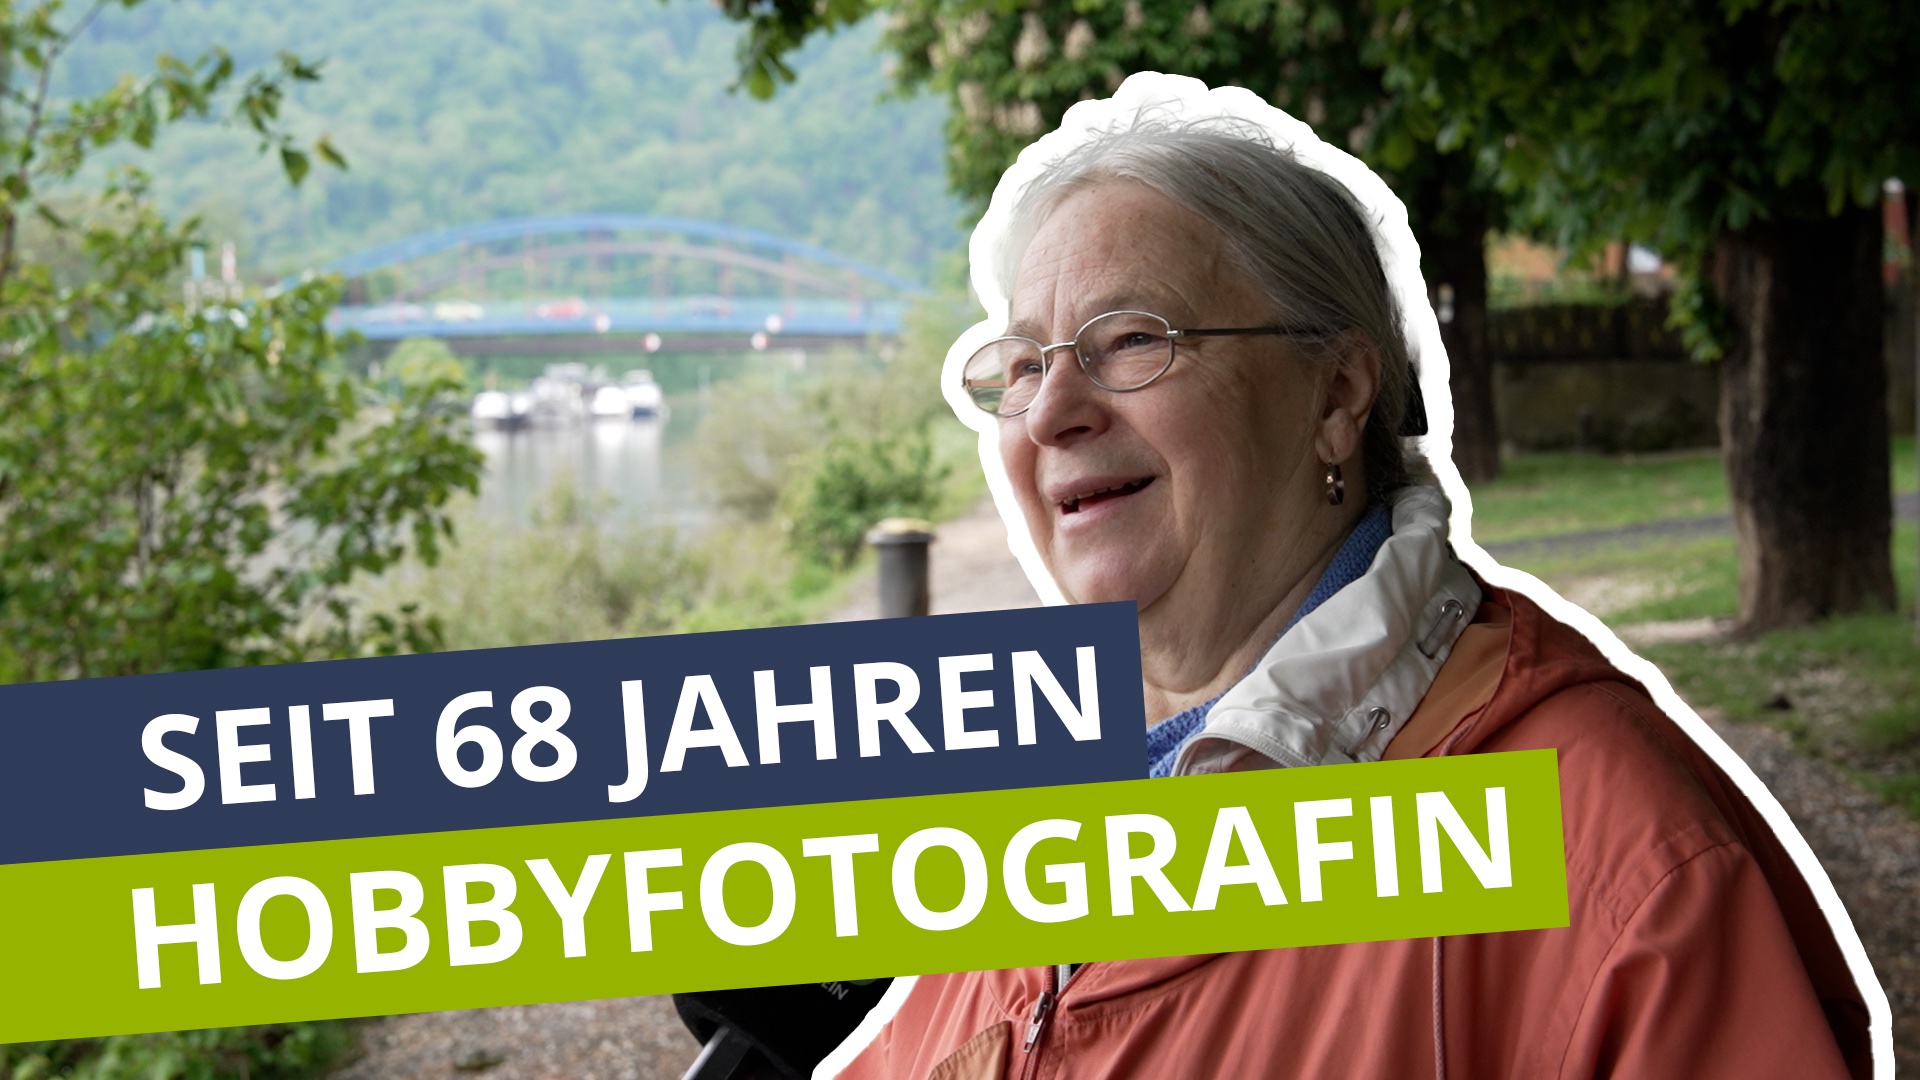 Hobbyfotografin aus Leidenschaft:  Magdalena Diefenbach fotografiert die Region seit 68 Jahren!